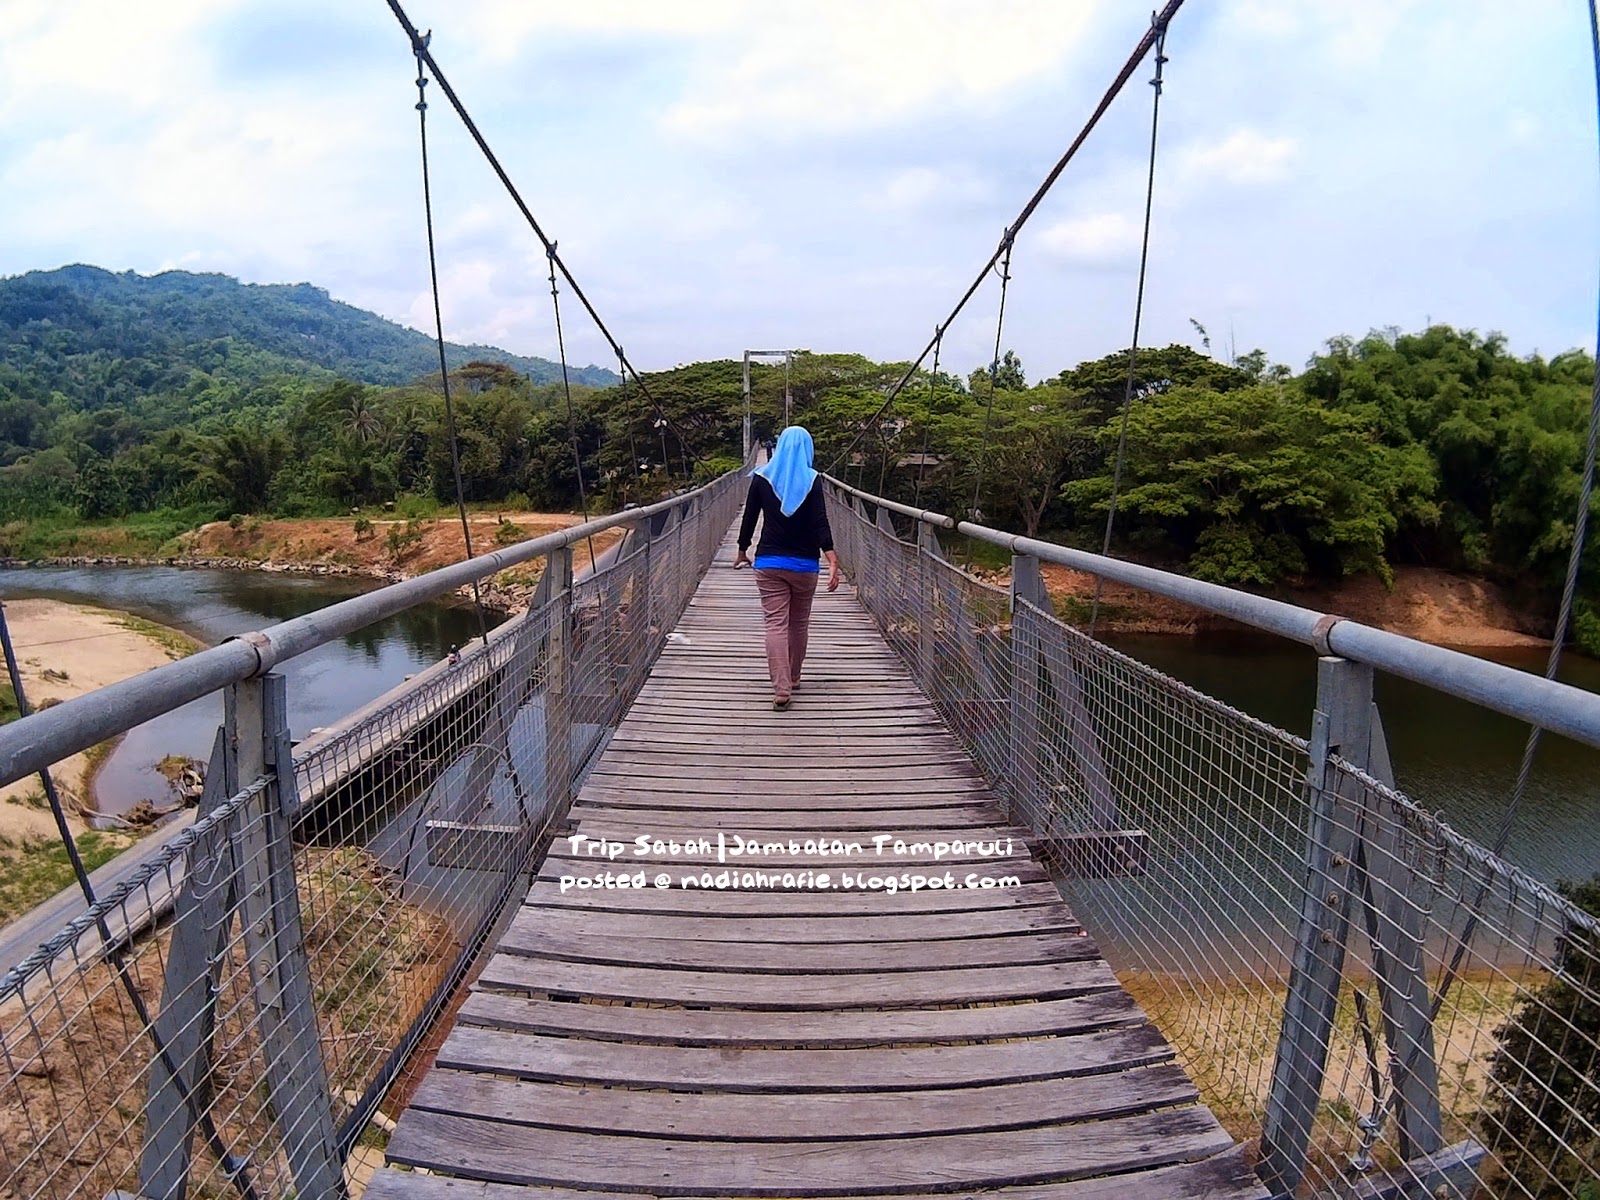 Blog Siapa Ini?: Trip Sabah | Jambatan Tamparuli & Rumah Terbalik, Tuaran